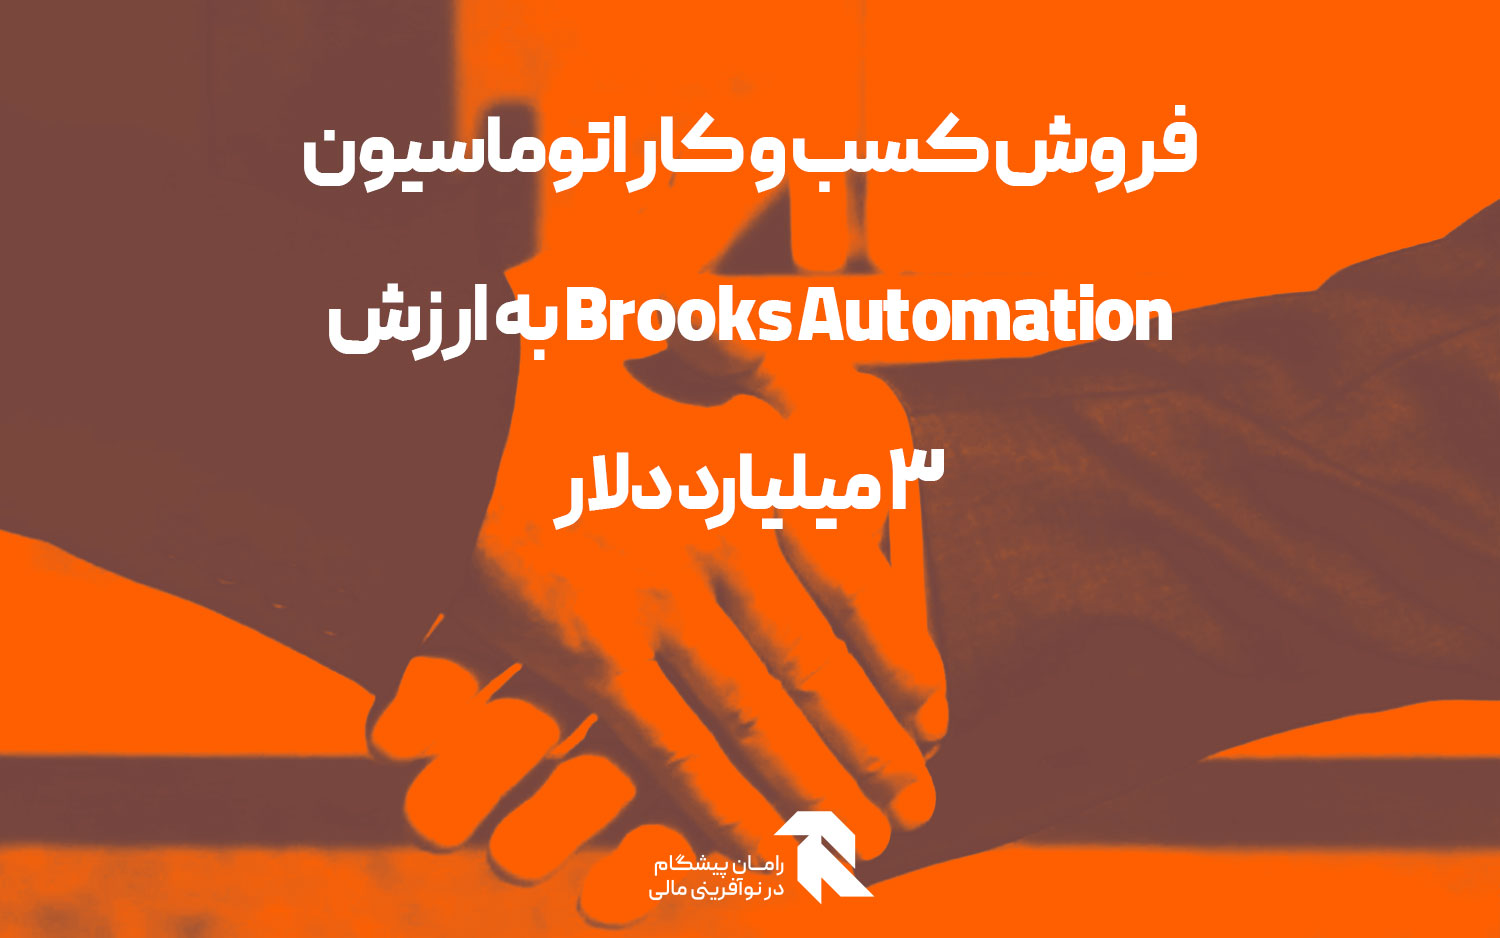 فروش کسب و کار اتوماسیون Brooks Automation به ارزش 3 میلیارد دلار